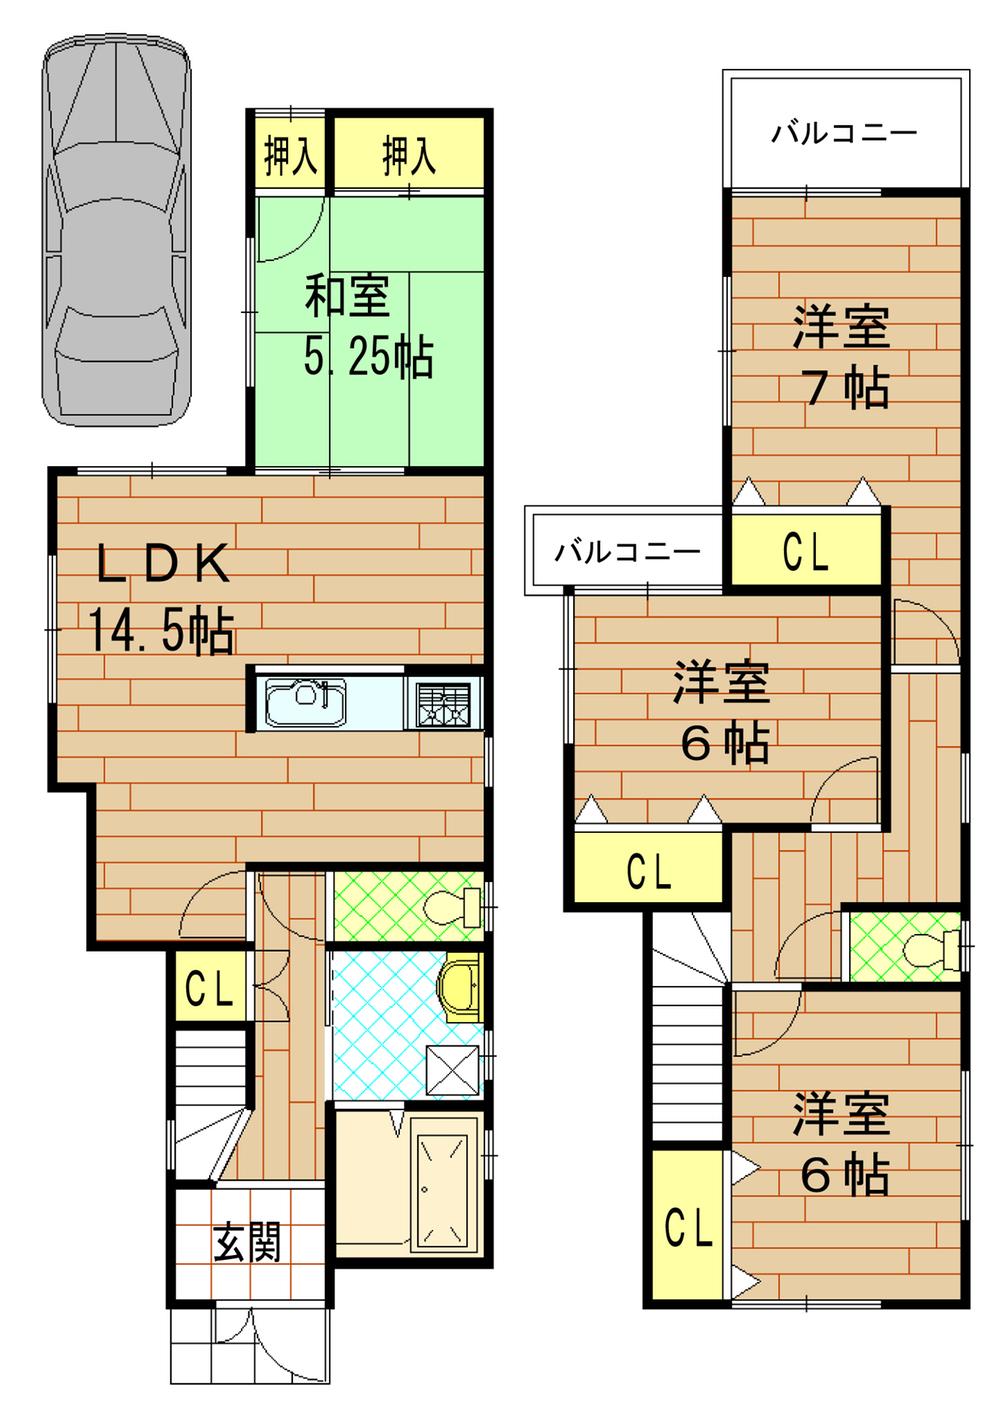 Floor plan. 28.8 million yen, 4LDK, Land area 103.37 sq m , Building area 95.17 sq m